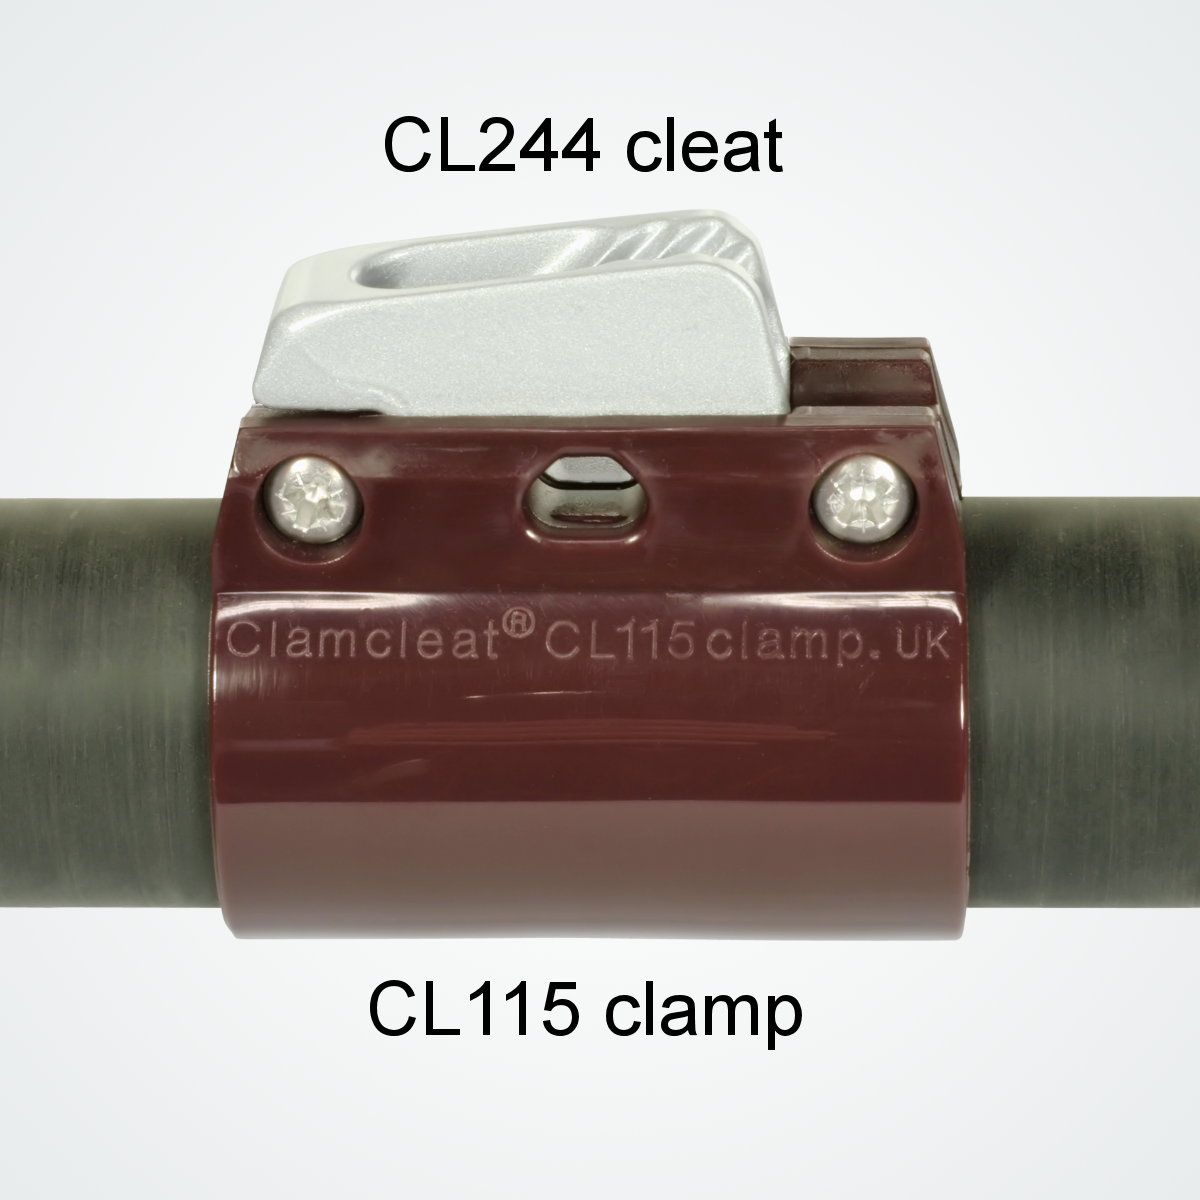 Стопор щелевой для гика Clamcleat Unifiber CL244S1 c нейлоновым зажимом стрелы 36-37мм для троса Ø3-5мм 42x22x20мм из серого алюминия